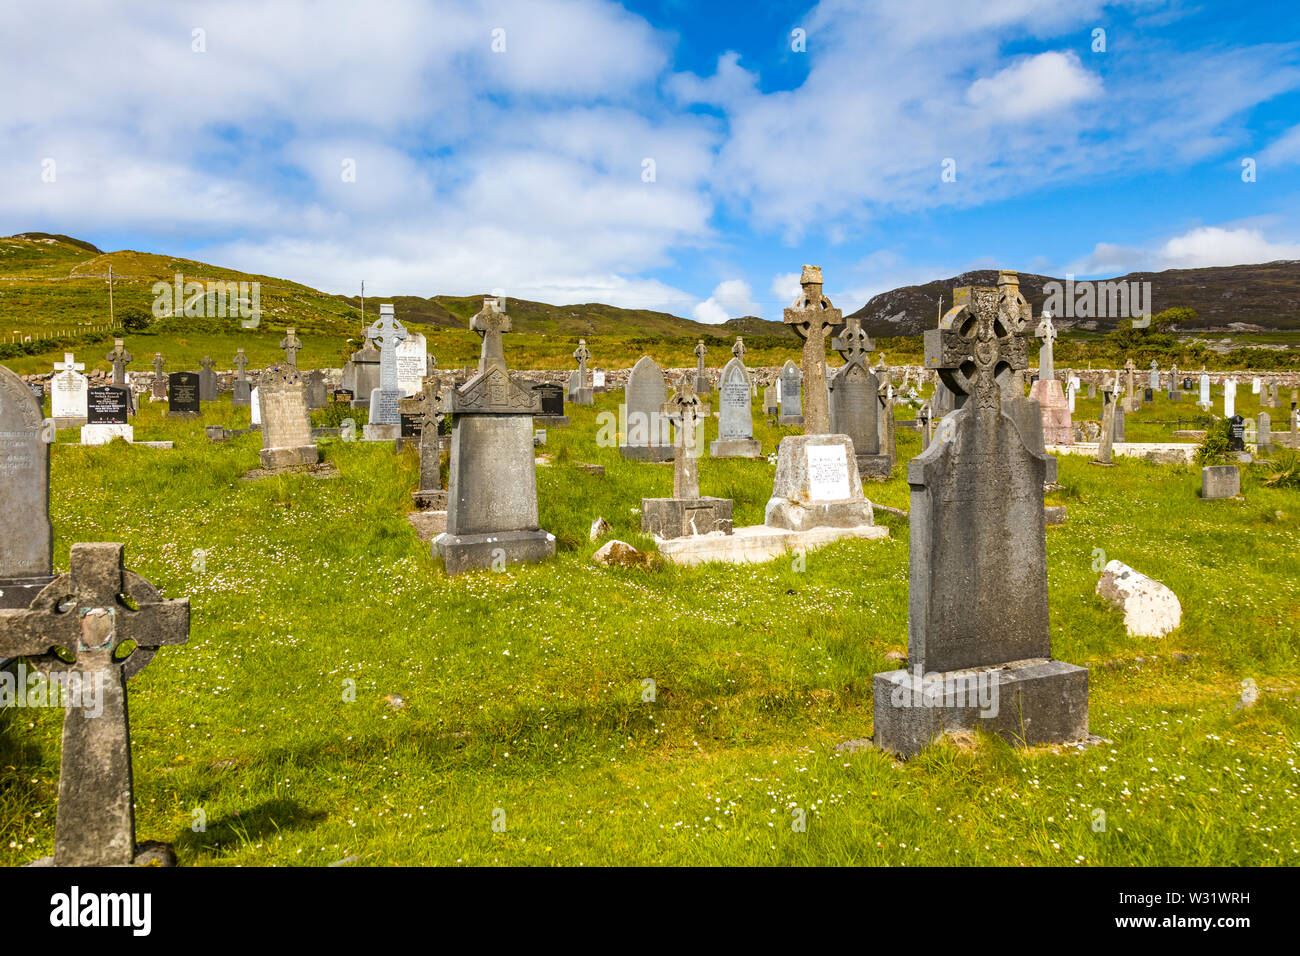 Kildownet Alten Friedhof auf dem wilden Atlantik Weise auf Achill Island im County Mayo Irland Stockfoto